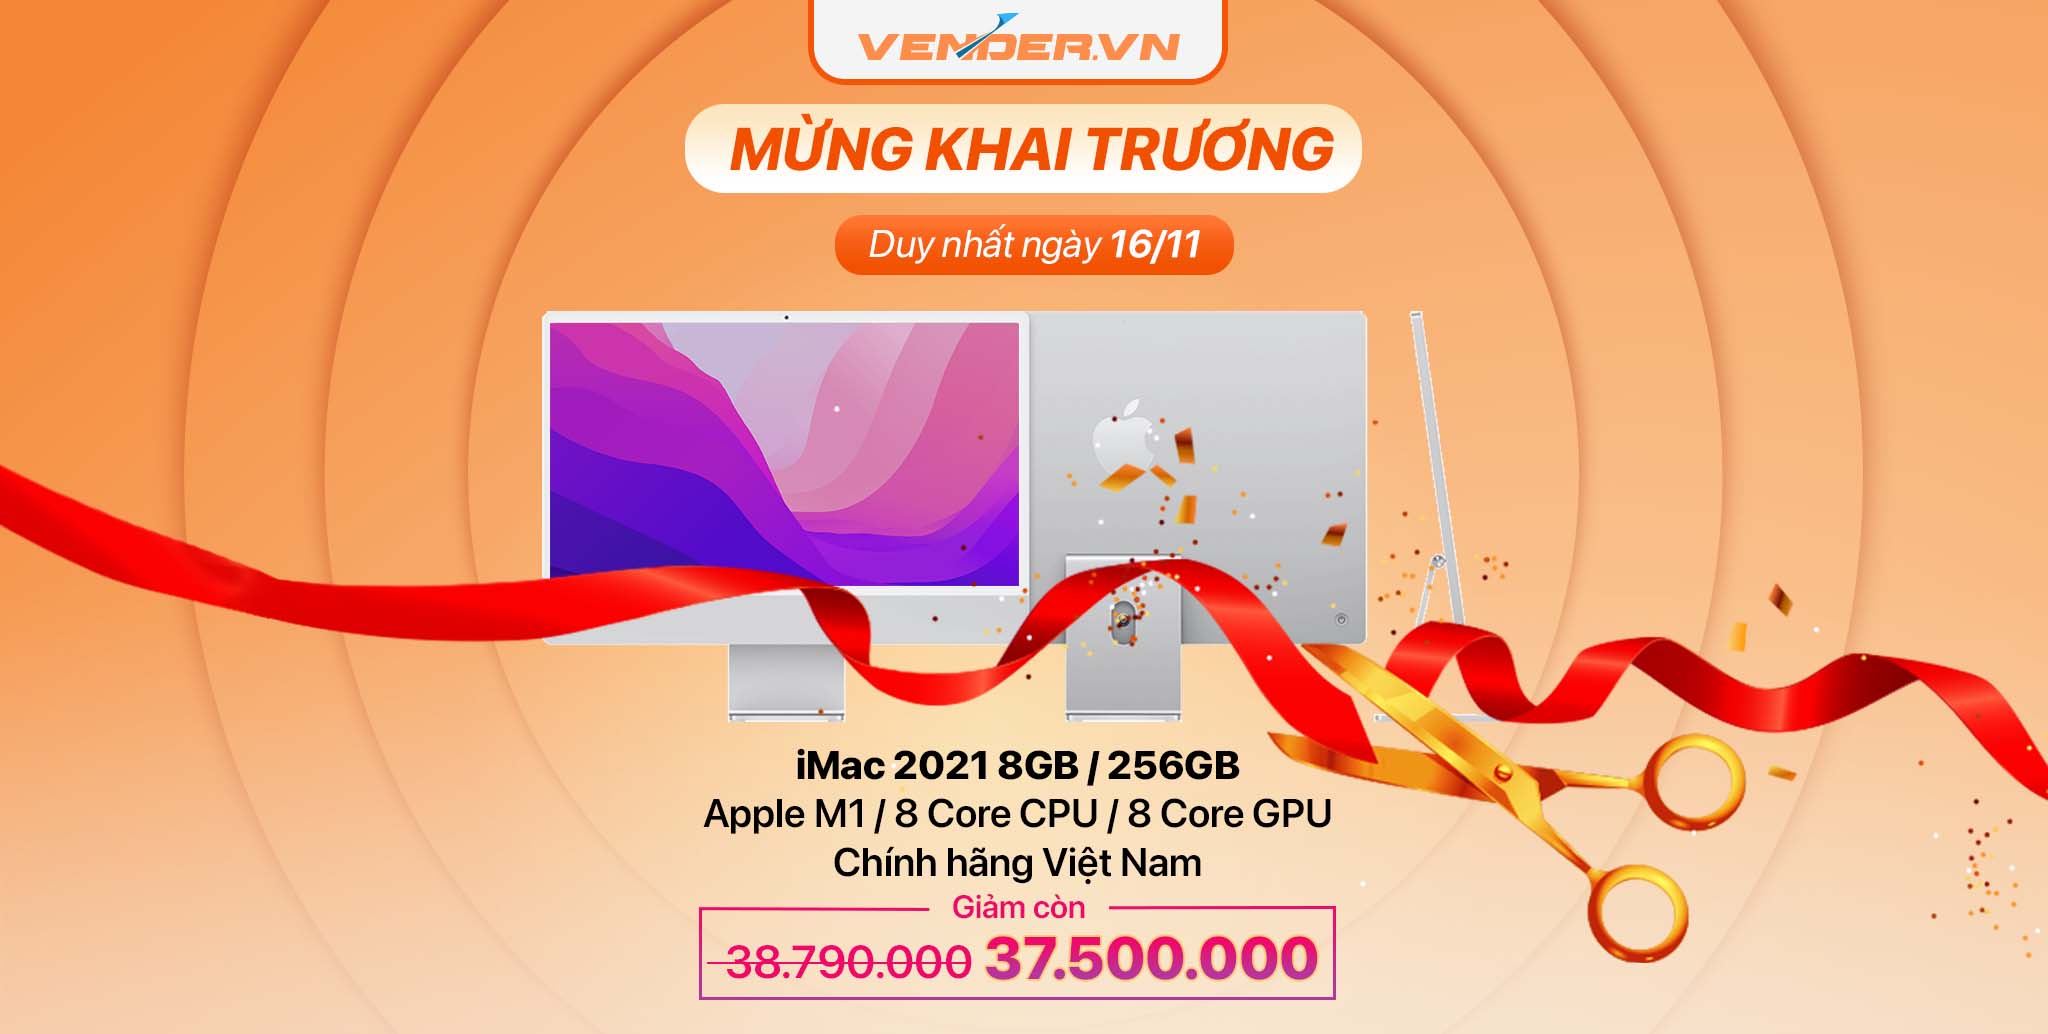 Vender Tưng bừng khai trương, mua sản phẩm Apple giá rẻ nhất